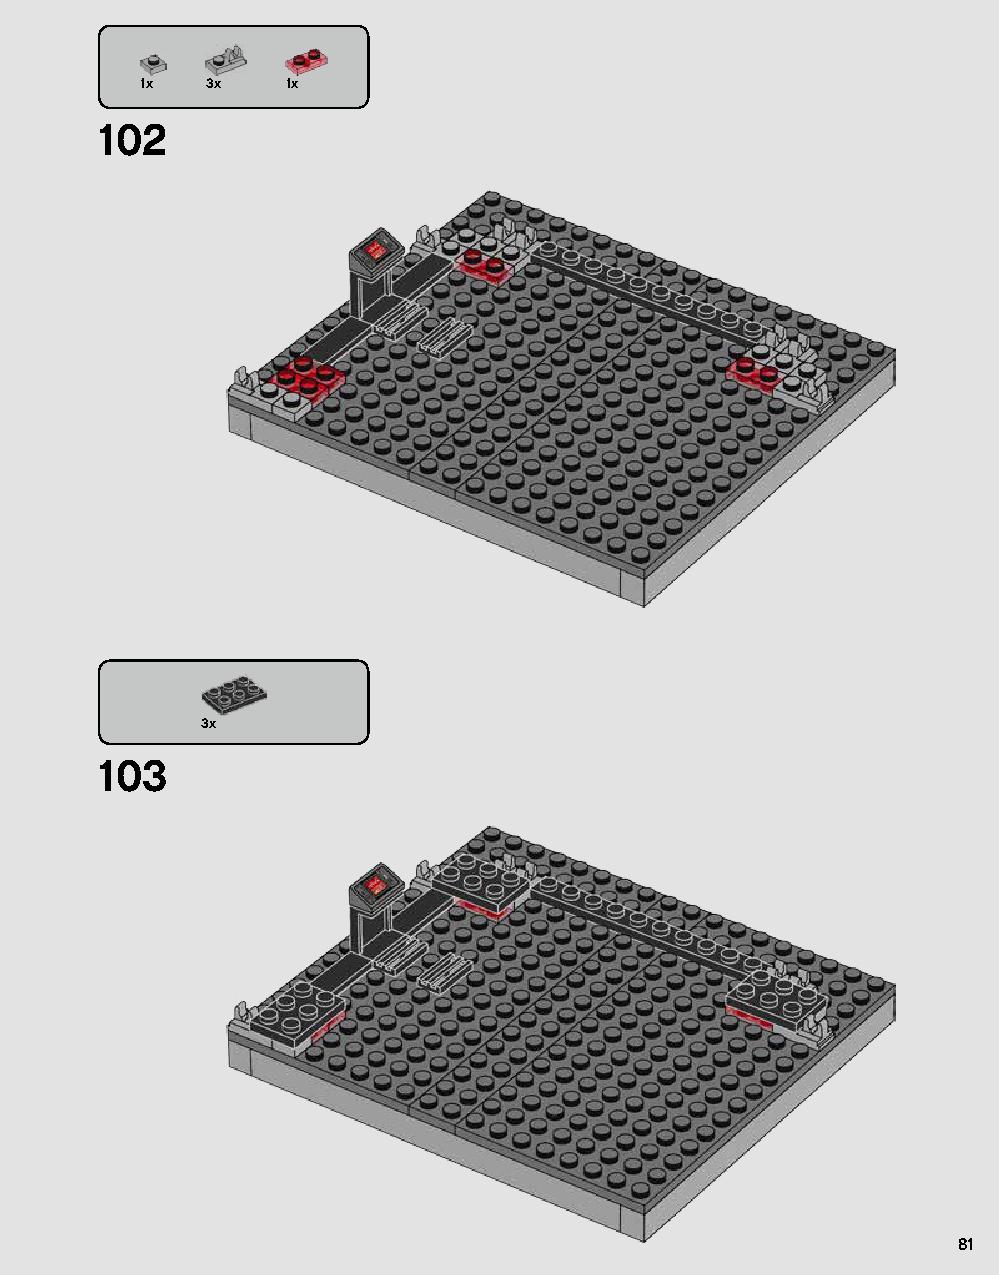 ダース・ベイダーの城 75251 レゴの商品情報 レゴの説明書・組立方法 81 page